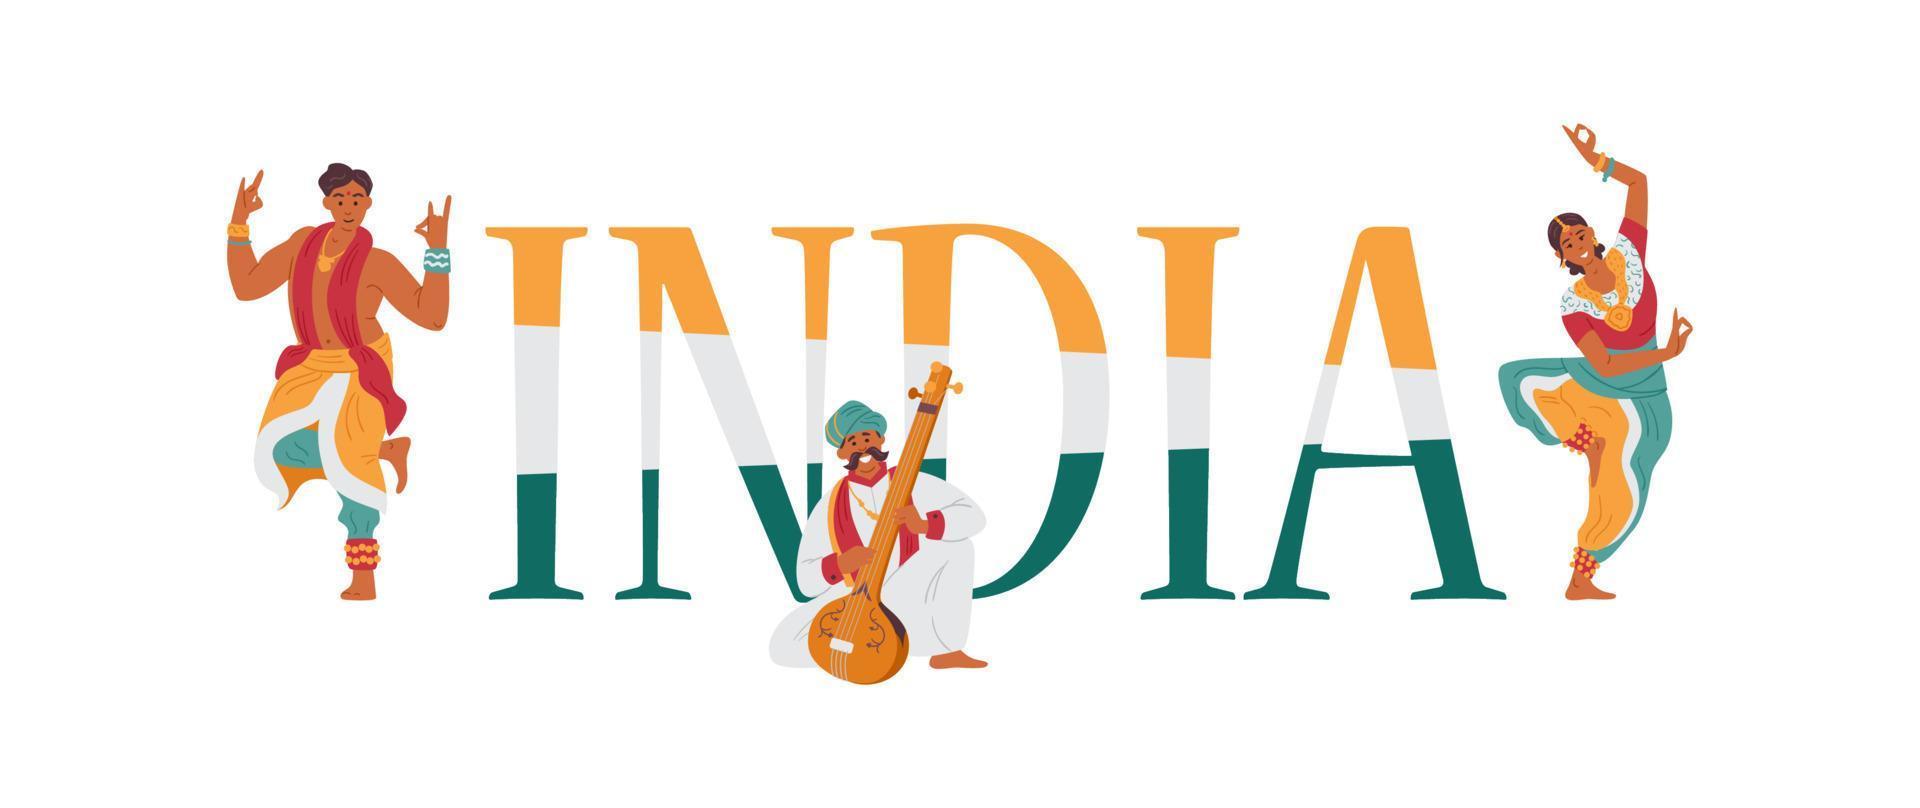 welkom bij indiase vectorbanner met indische karakters, dansers en muzikant in traditionele outfit. vector